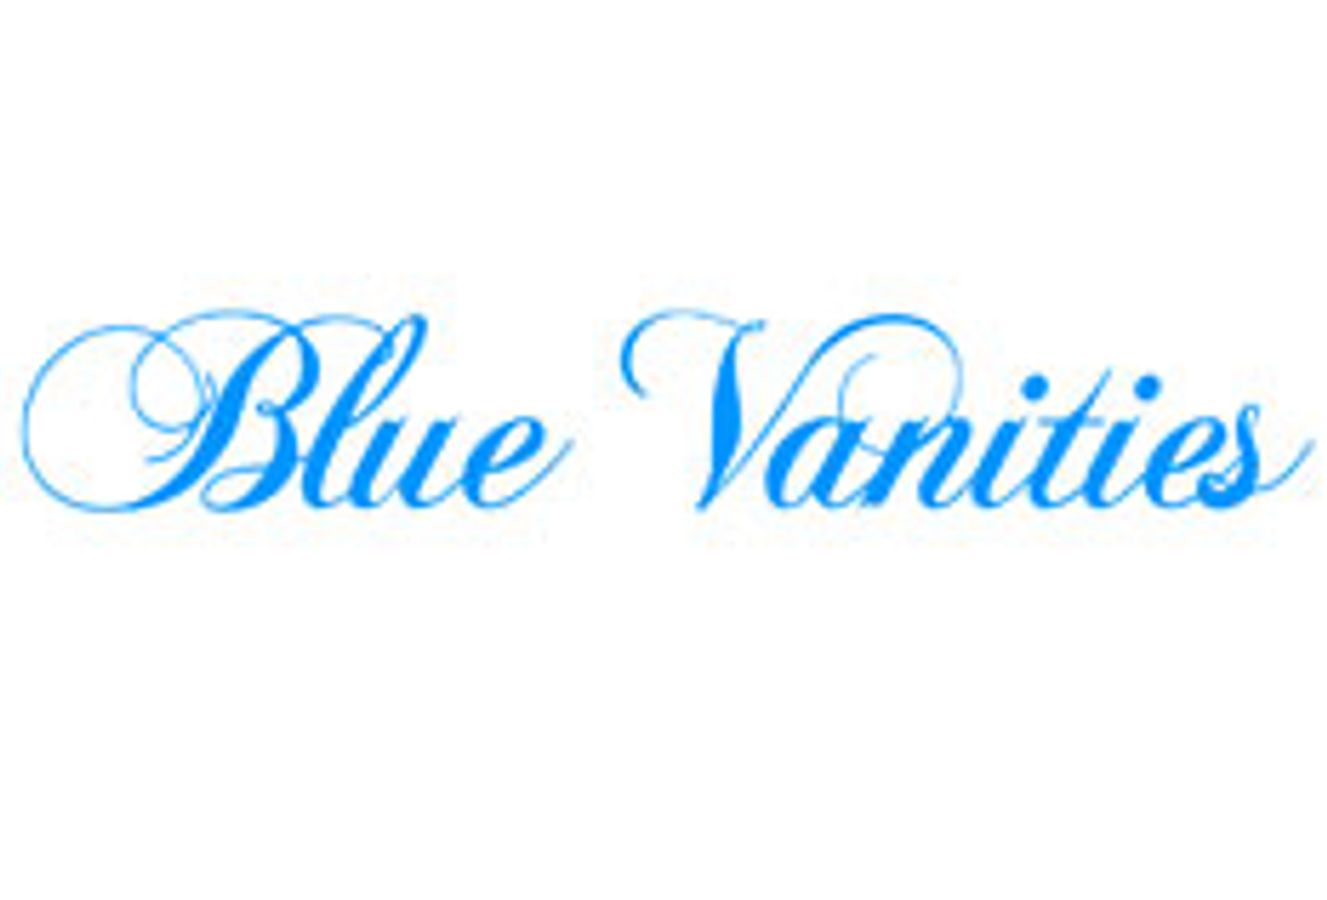 Blue Vanities